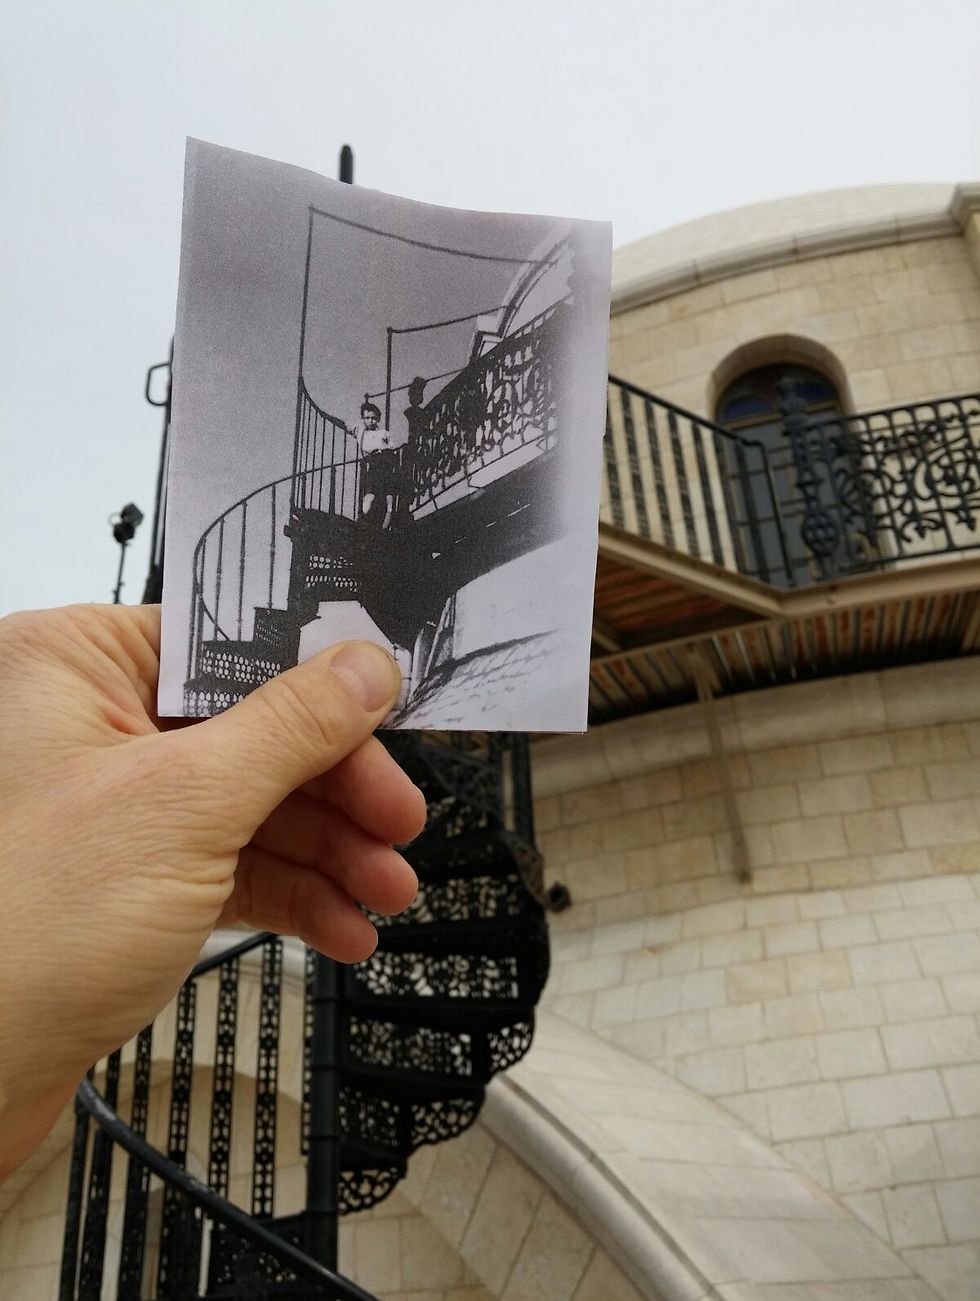 המדרגות אל גג החורבה, 1940 (צילום: באדיבות החברה לשיקום ופיתוח הרובע היהודי) (צילום: באדיבות החברה לשיקום ופיתוח הרובע היהודי)